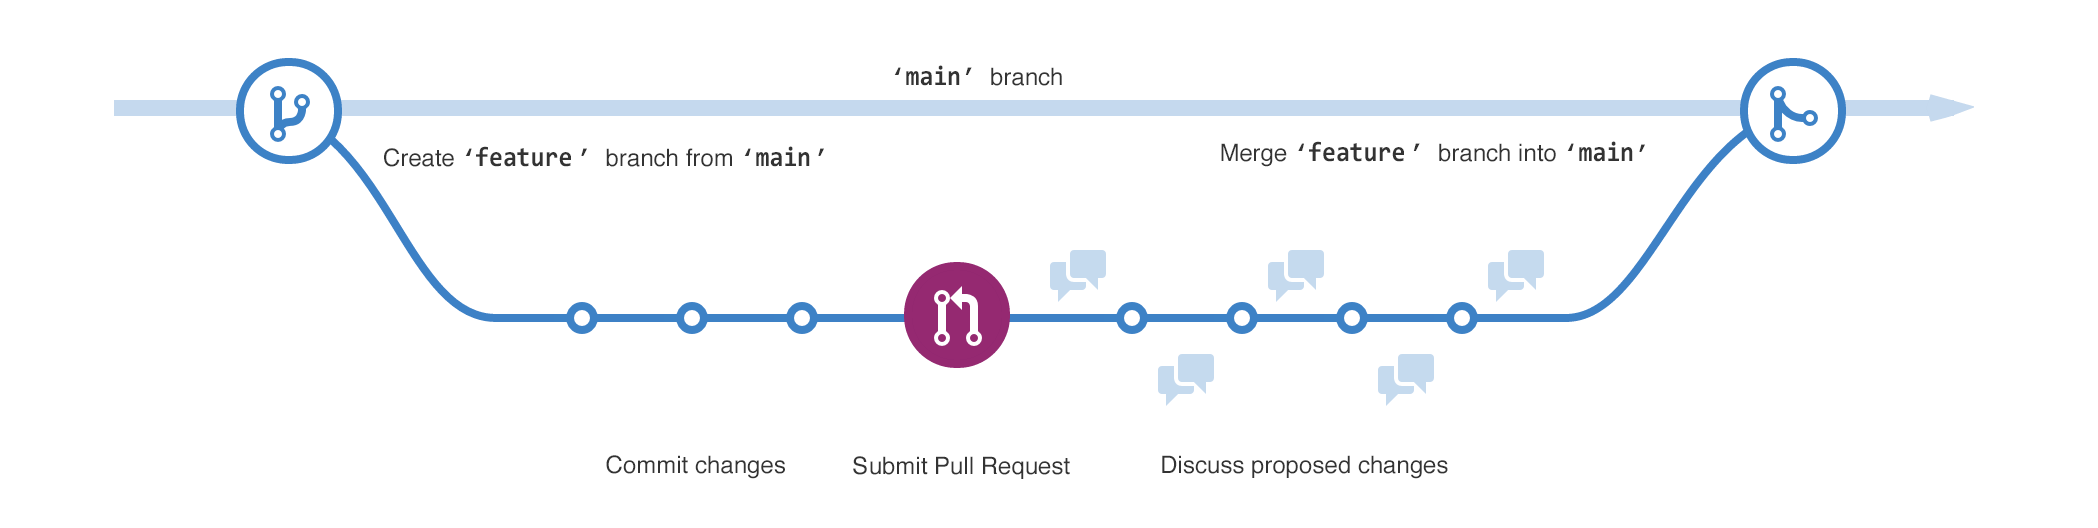 2 つのブランチの図。 "feature" ブランチは "メイン" ブランチから分岐し、"変更のコミット"、"pull request の送信"、"提案された変更のディスカッション" の各ステージを経て、main にマージされます。